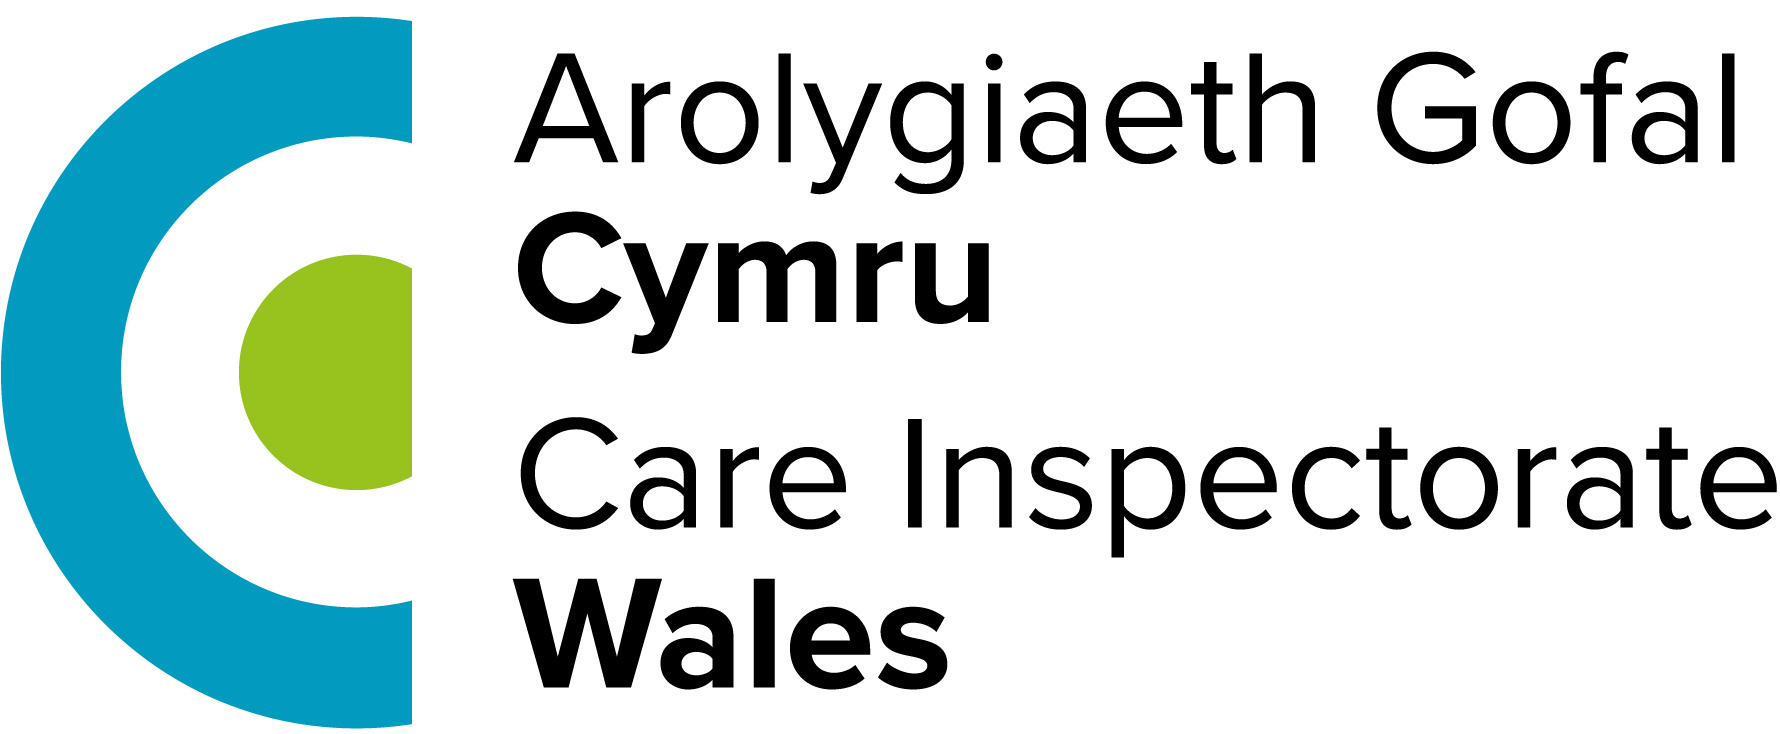 Care Inspectorate Wales Arolygiaeth Gofal Cymru